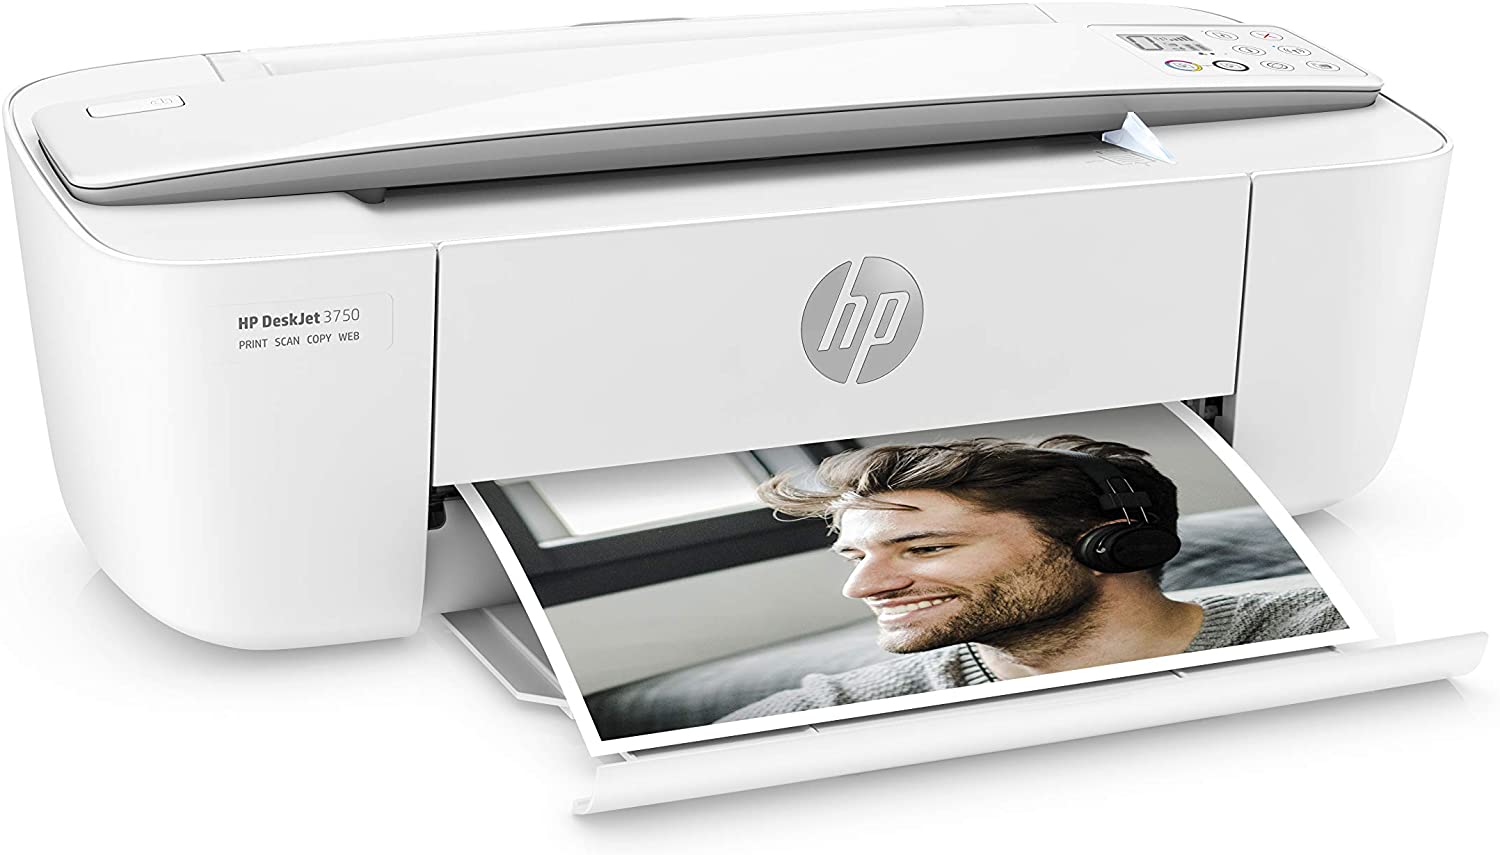 HP Deskjet Multifunktionsdrucker 3750 Wifi White